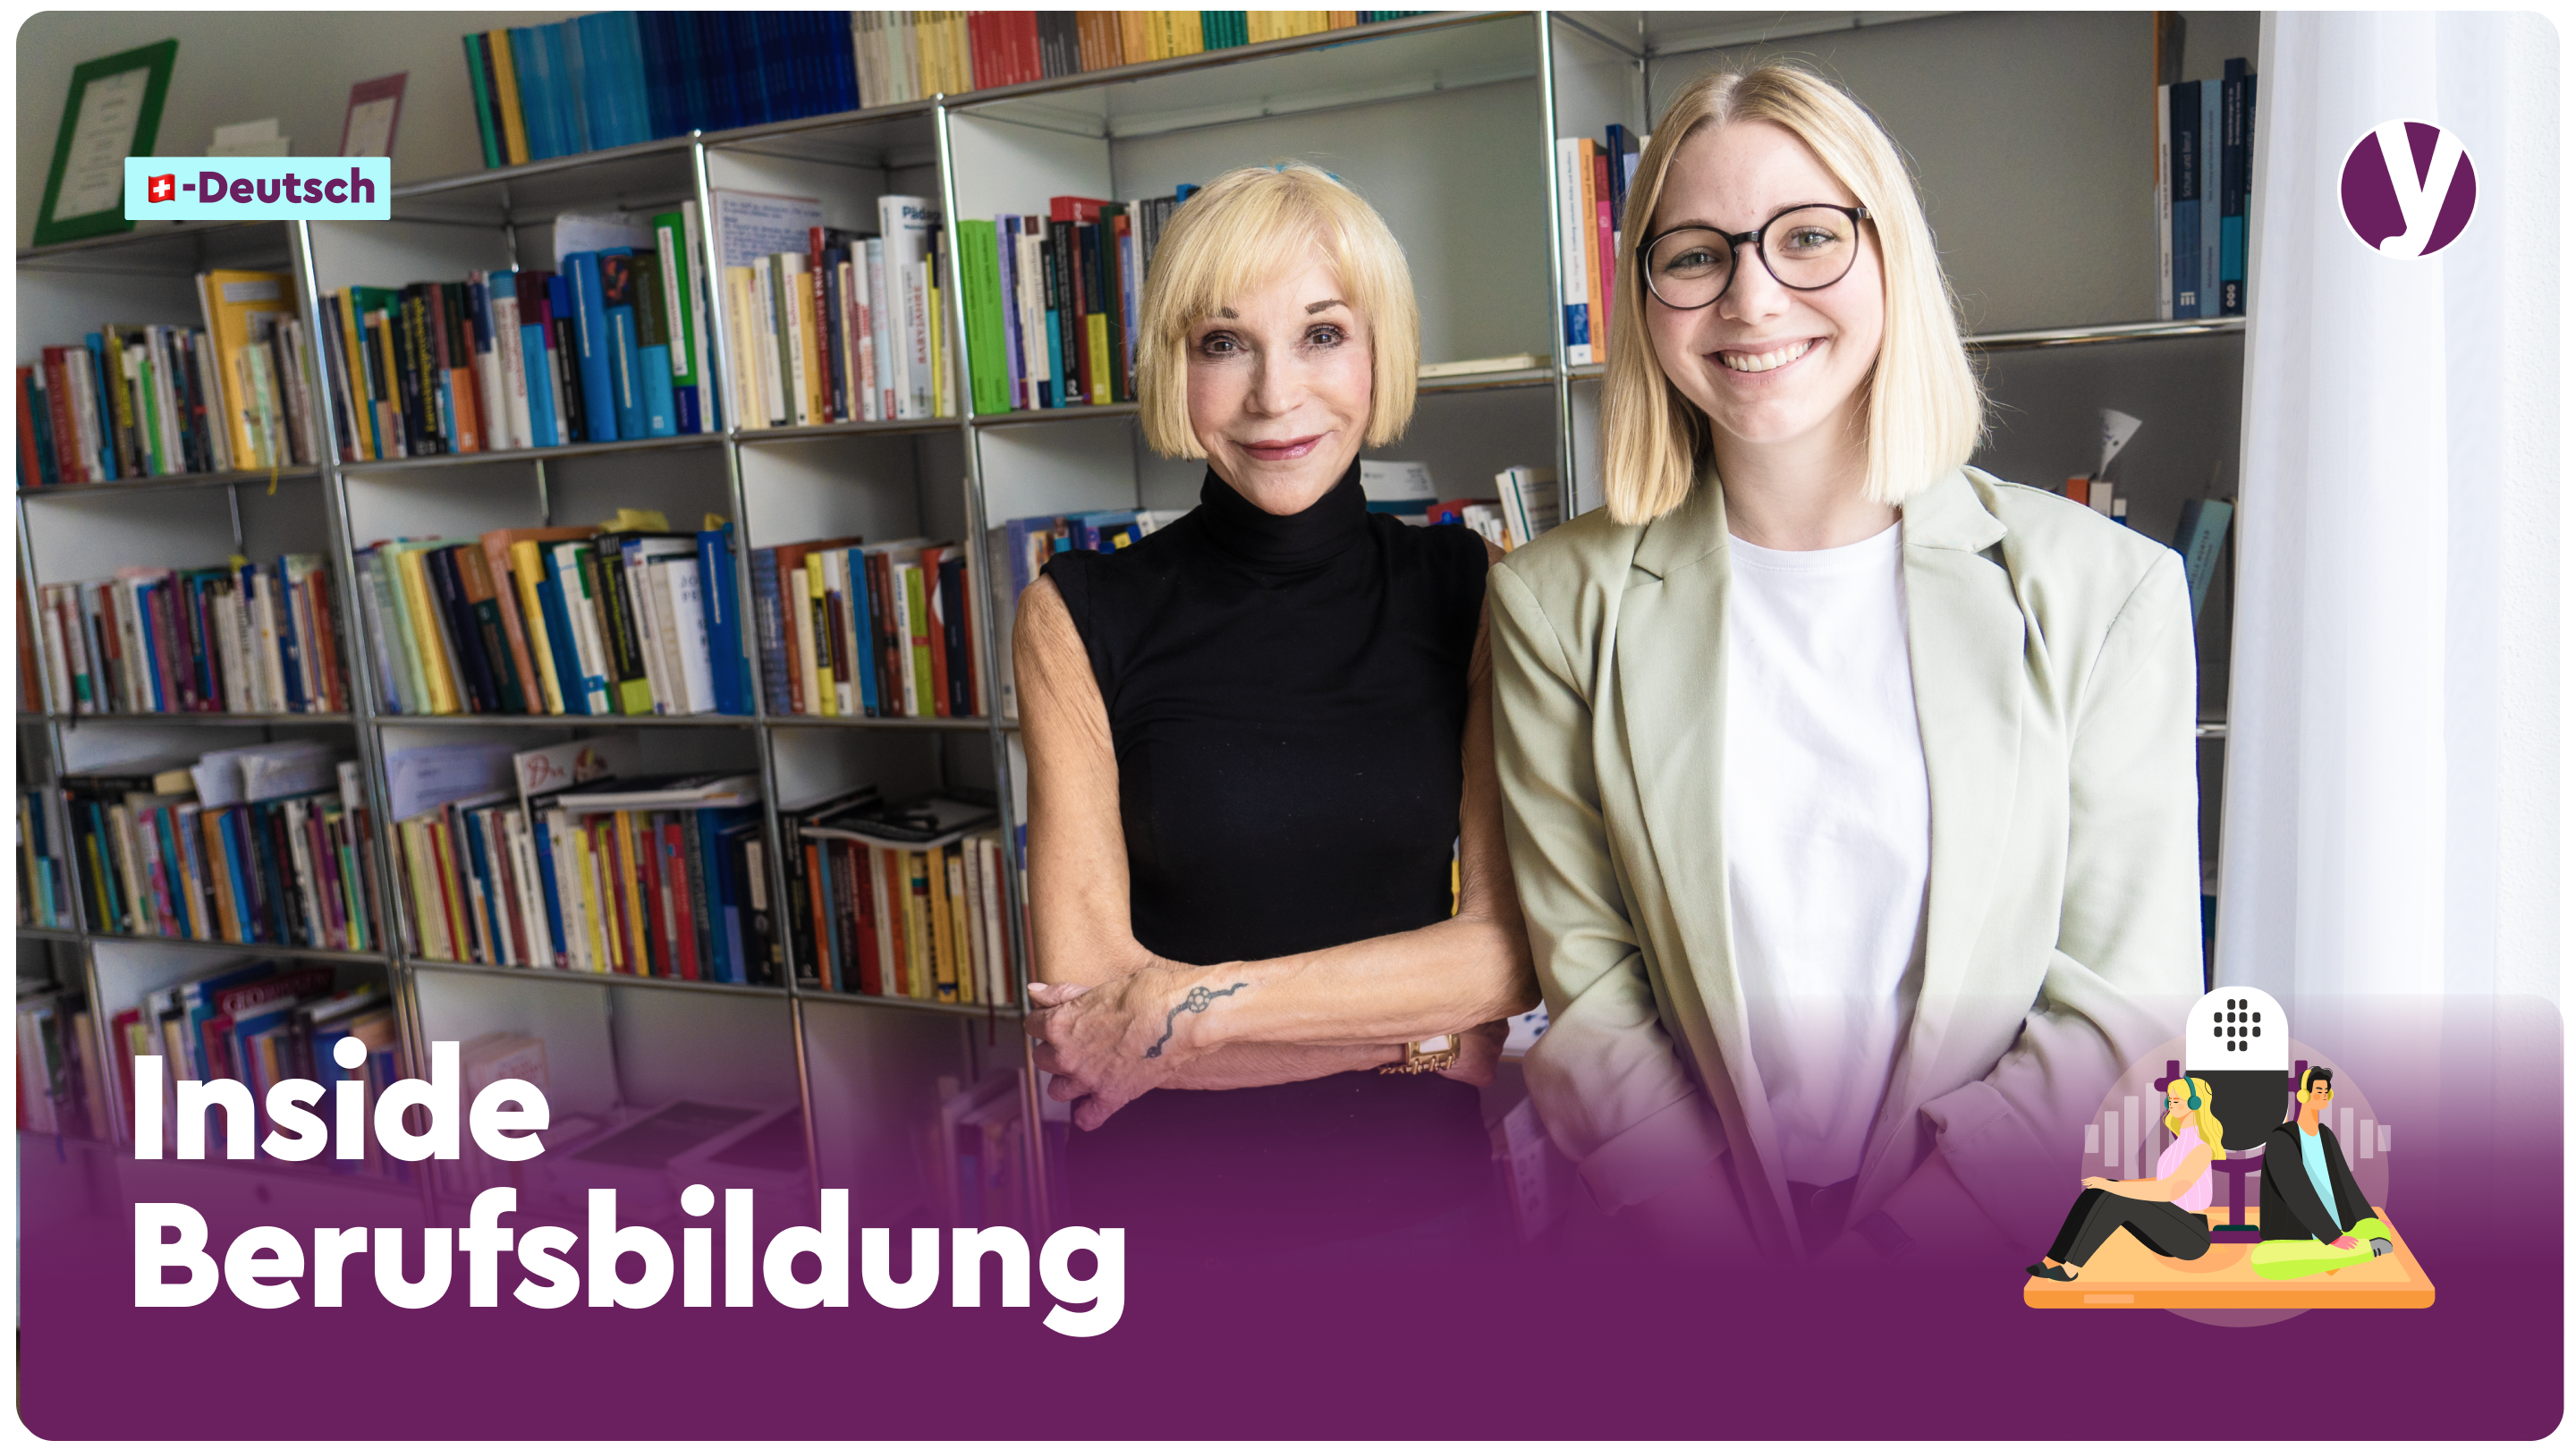 Podcast-Folge 19 mit Gast Margrit Stamm und Moderatorin Stefanie Näf: Wert der Berufslehre kennen.